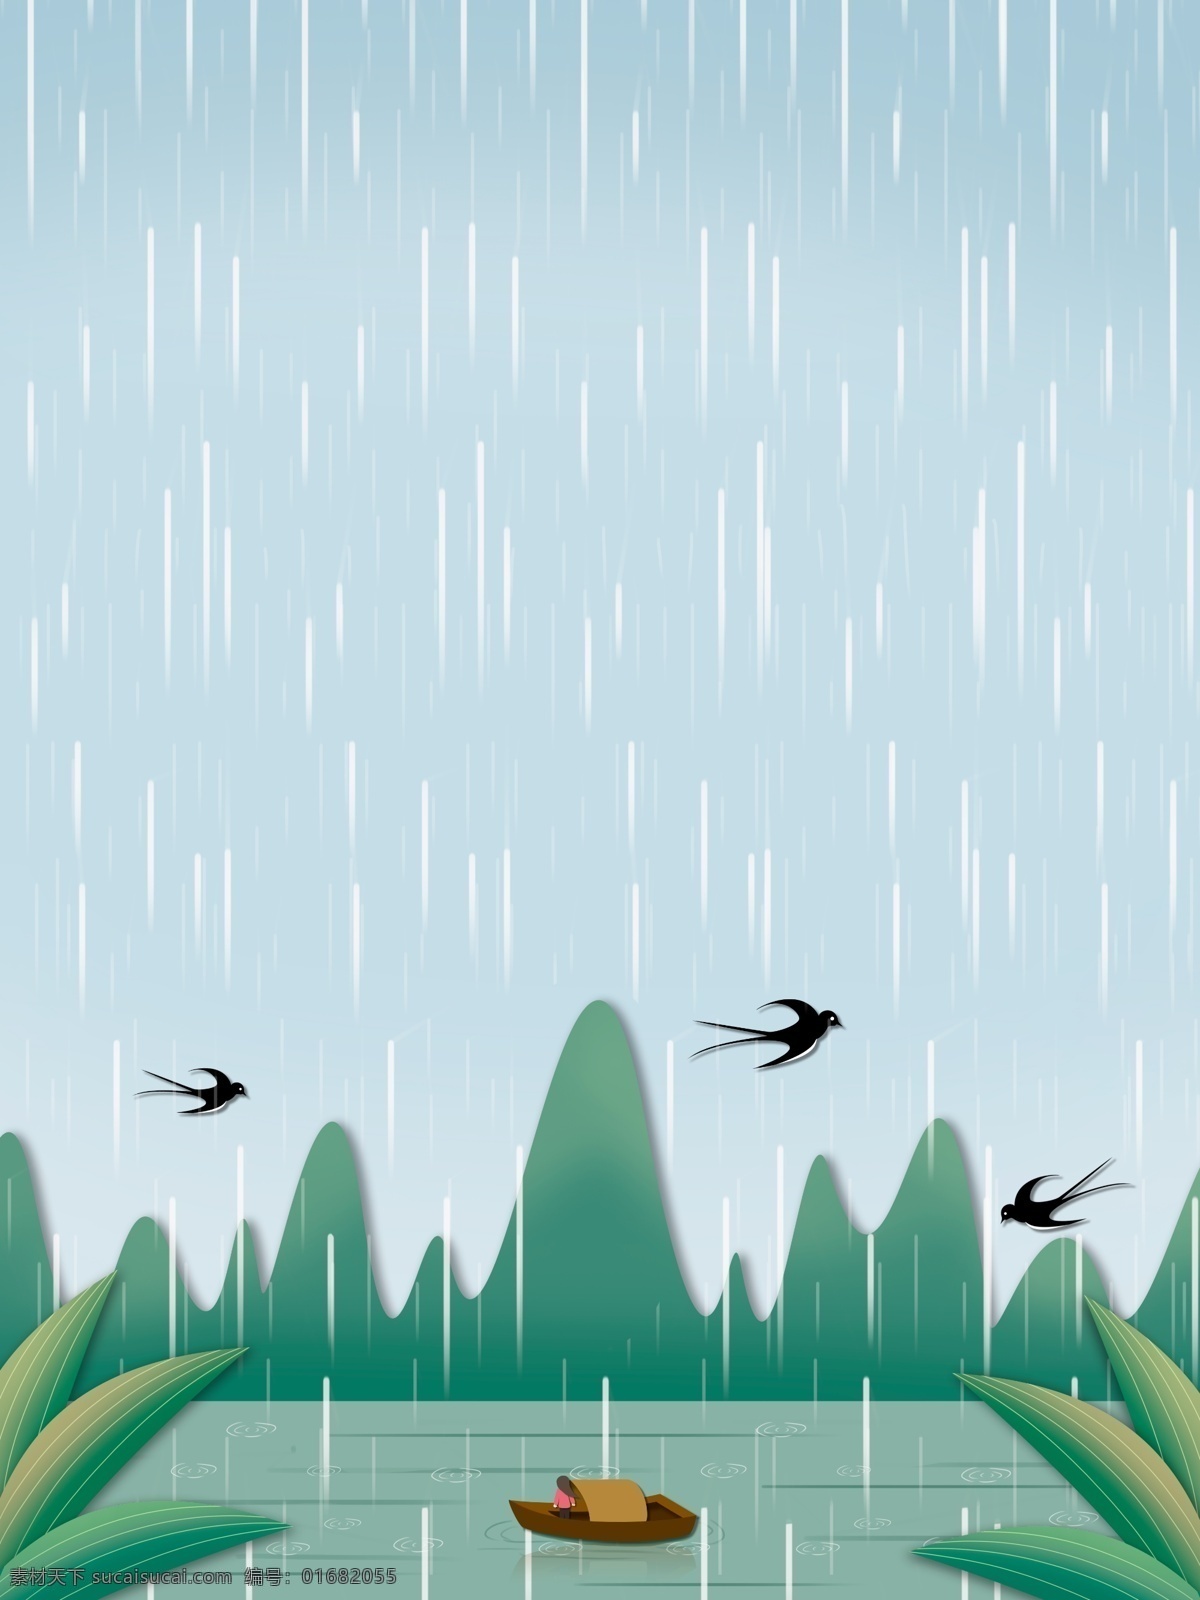 小雨 节气 河边 风景 插画 背景 草地背景 绿地背景 蓝天白云 叶子 山水风景 雨季 下雨